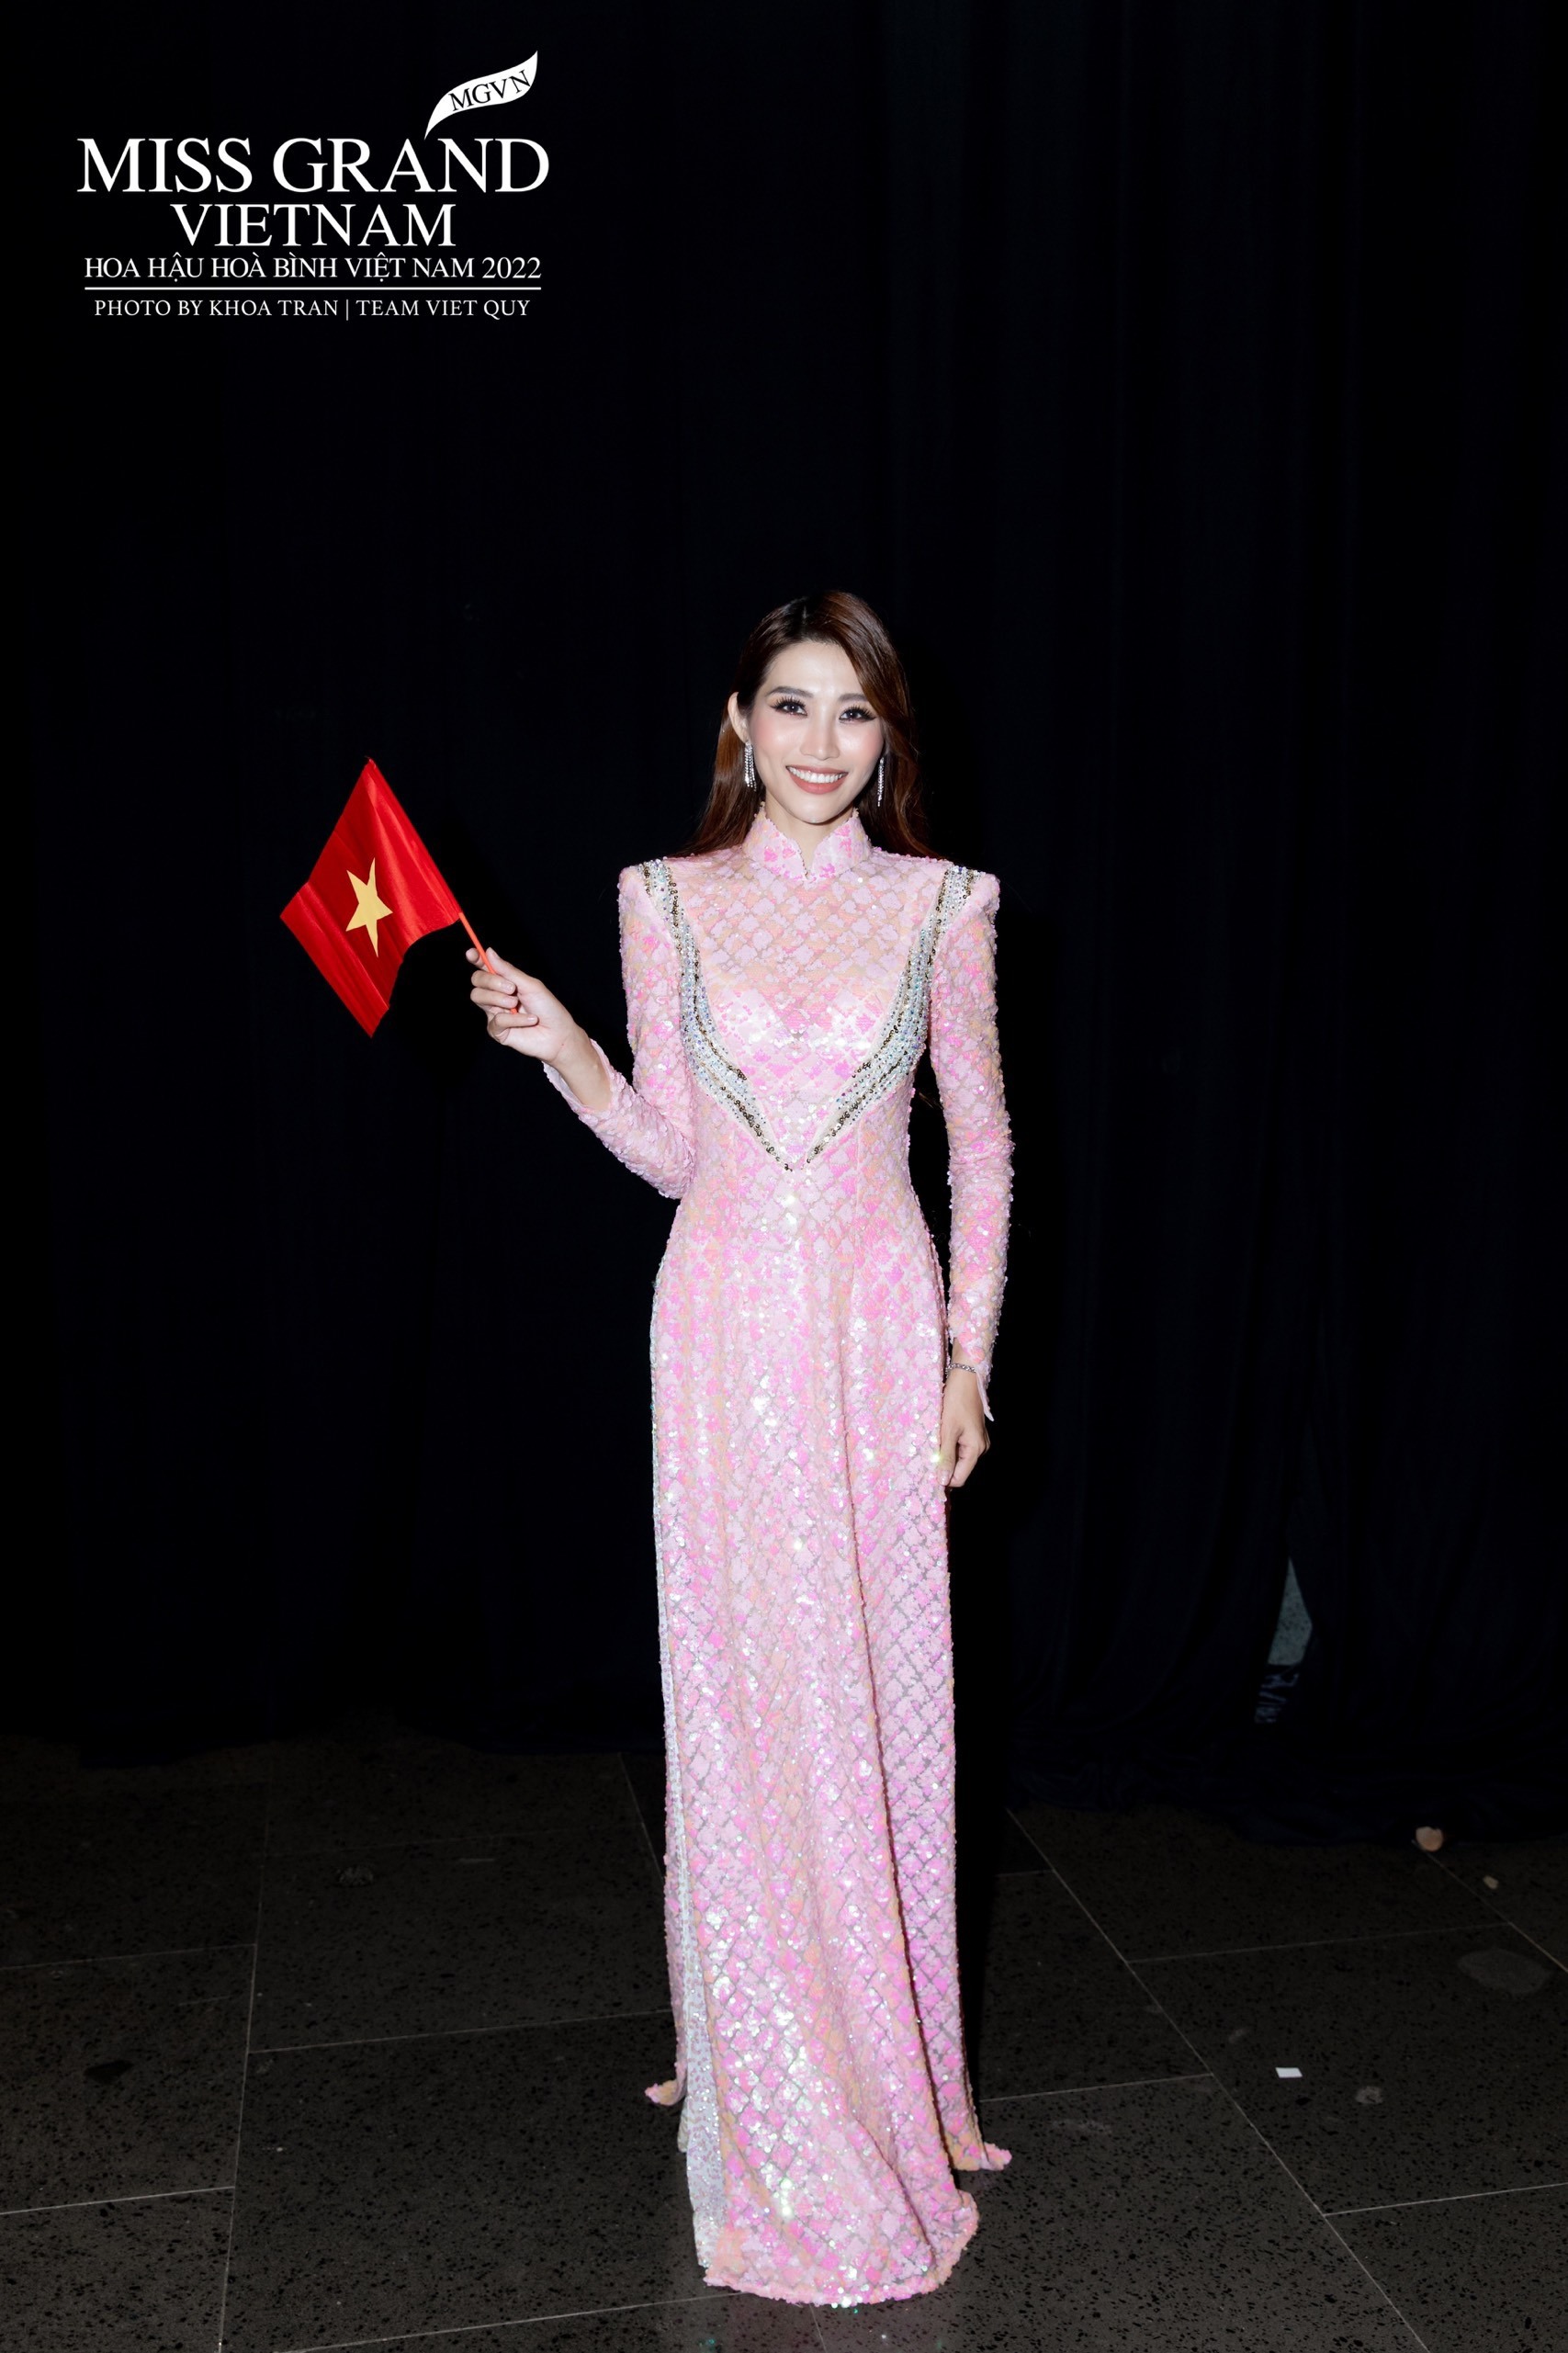 Sau khi gây ấn tượng với vai trò MC tại đêm chung khảo Hoa hậu Việt Nam 2022, Quỳnh Châu tiếp tục nhận tin vui khi xuất hiện tại show diễn thời trang ở Thái Lan. Đây cũng là chuyến lưu diễn ở nước ngoài đầu tiên của Quỳnh Châu sau khi đảm nhận vai trò mới.